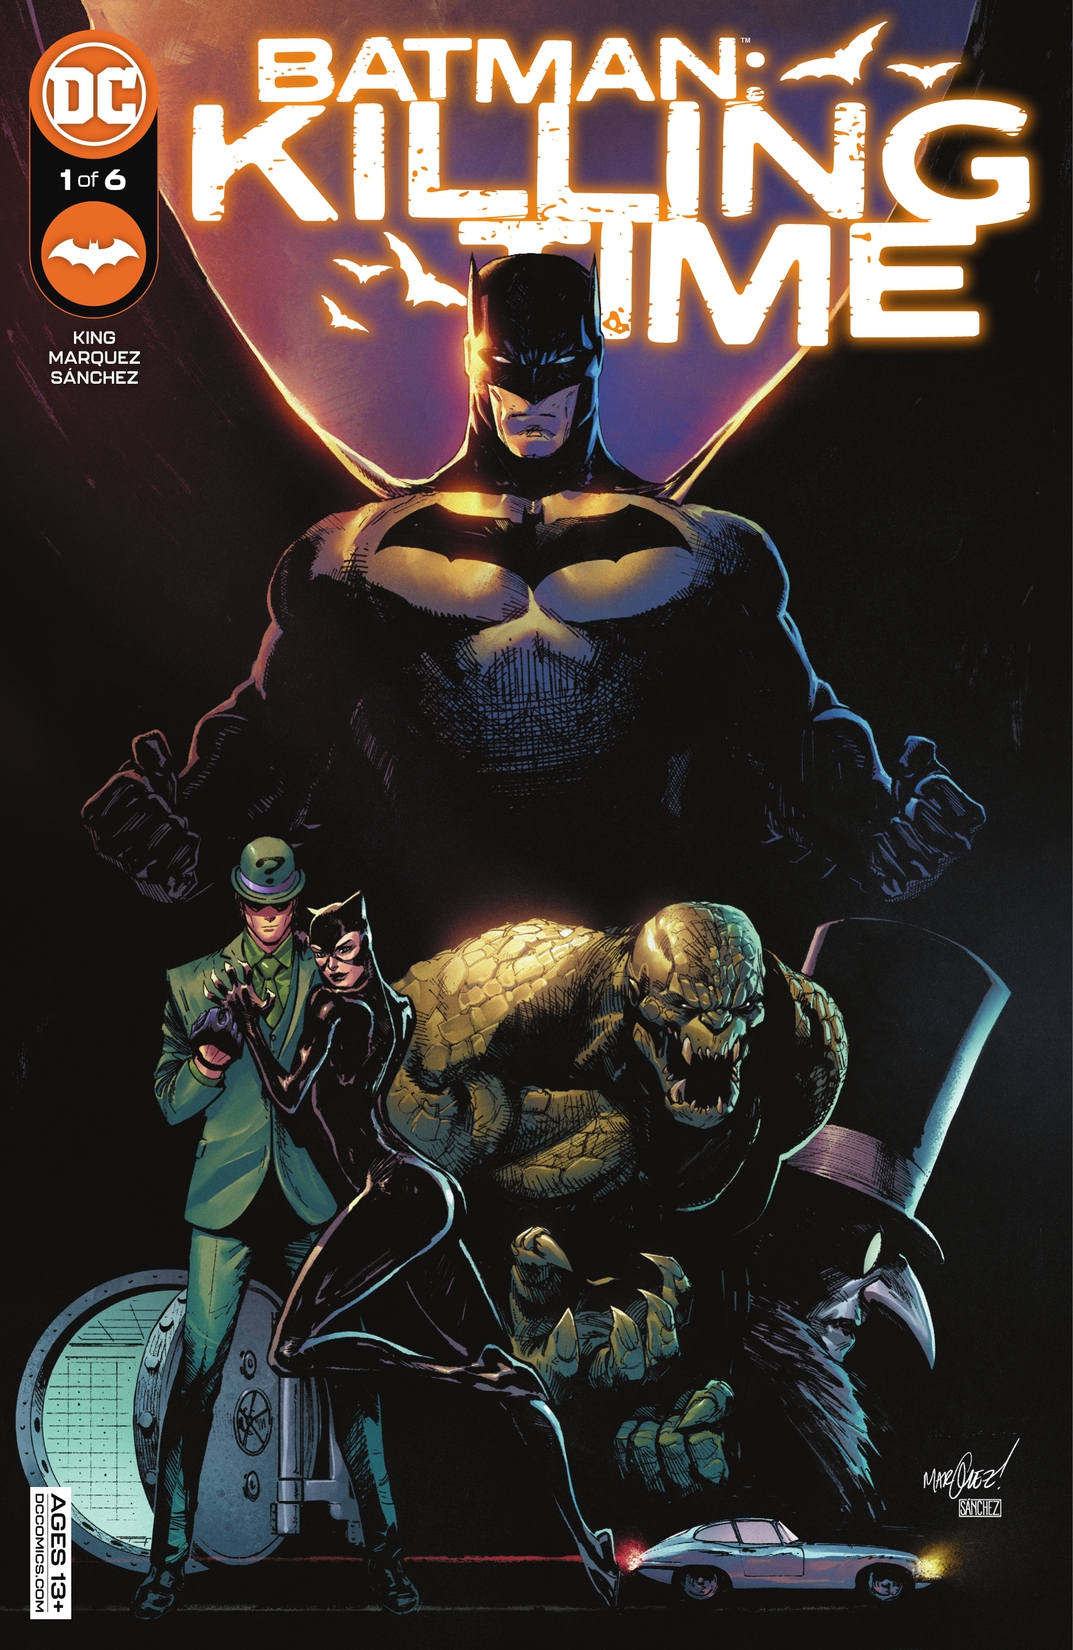 Batman: Killing Time #1 preview images